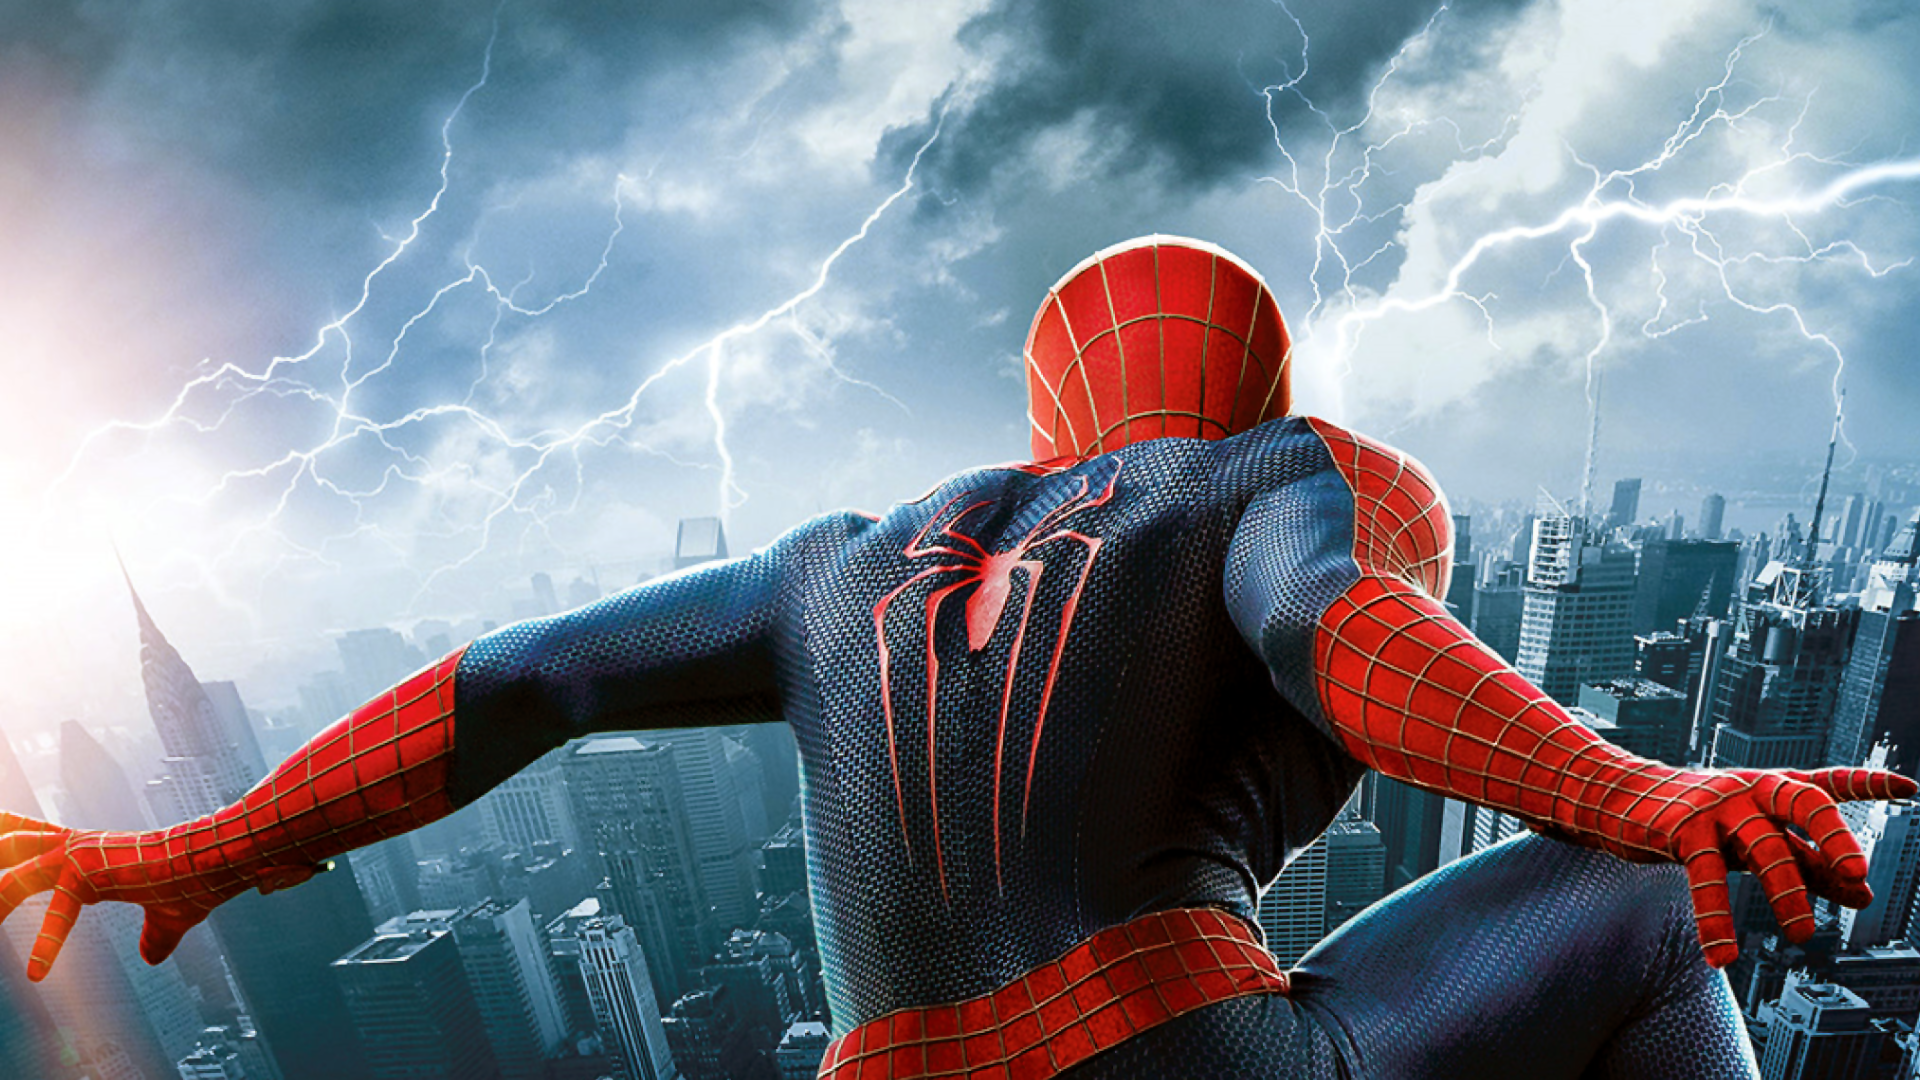 le papier peint incroyable spider man,homme araignée,super héros,personnage fictif,monde,héros